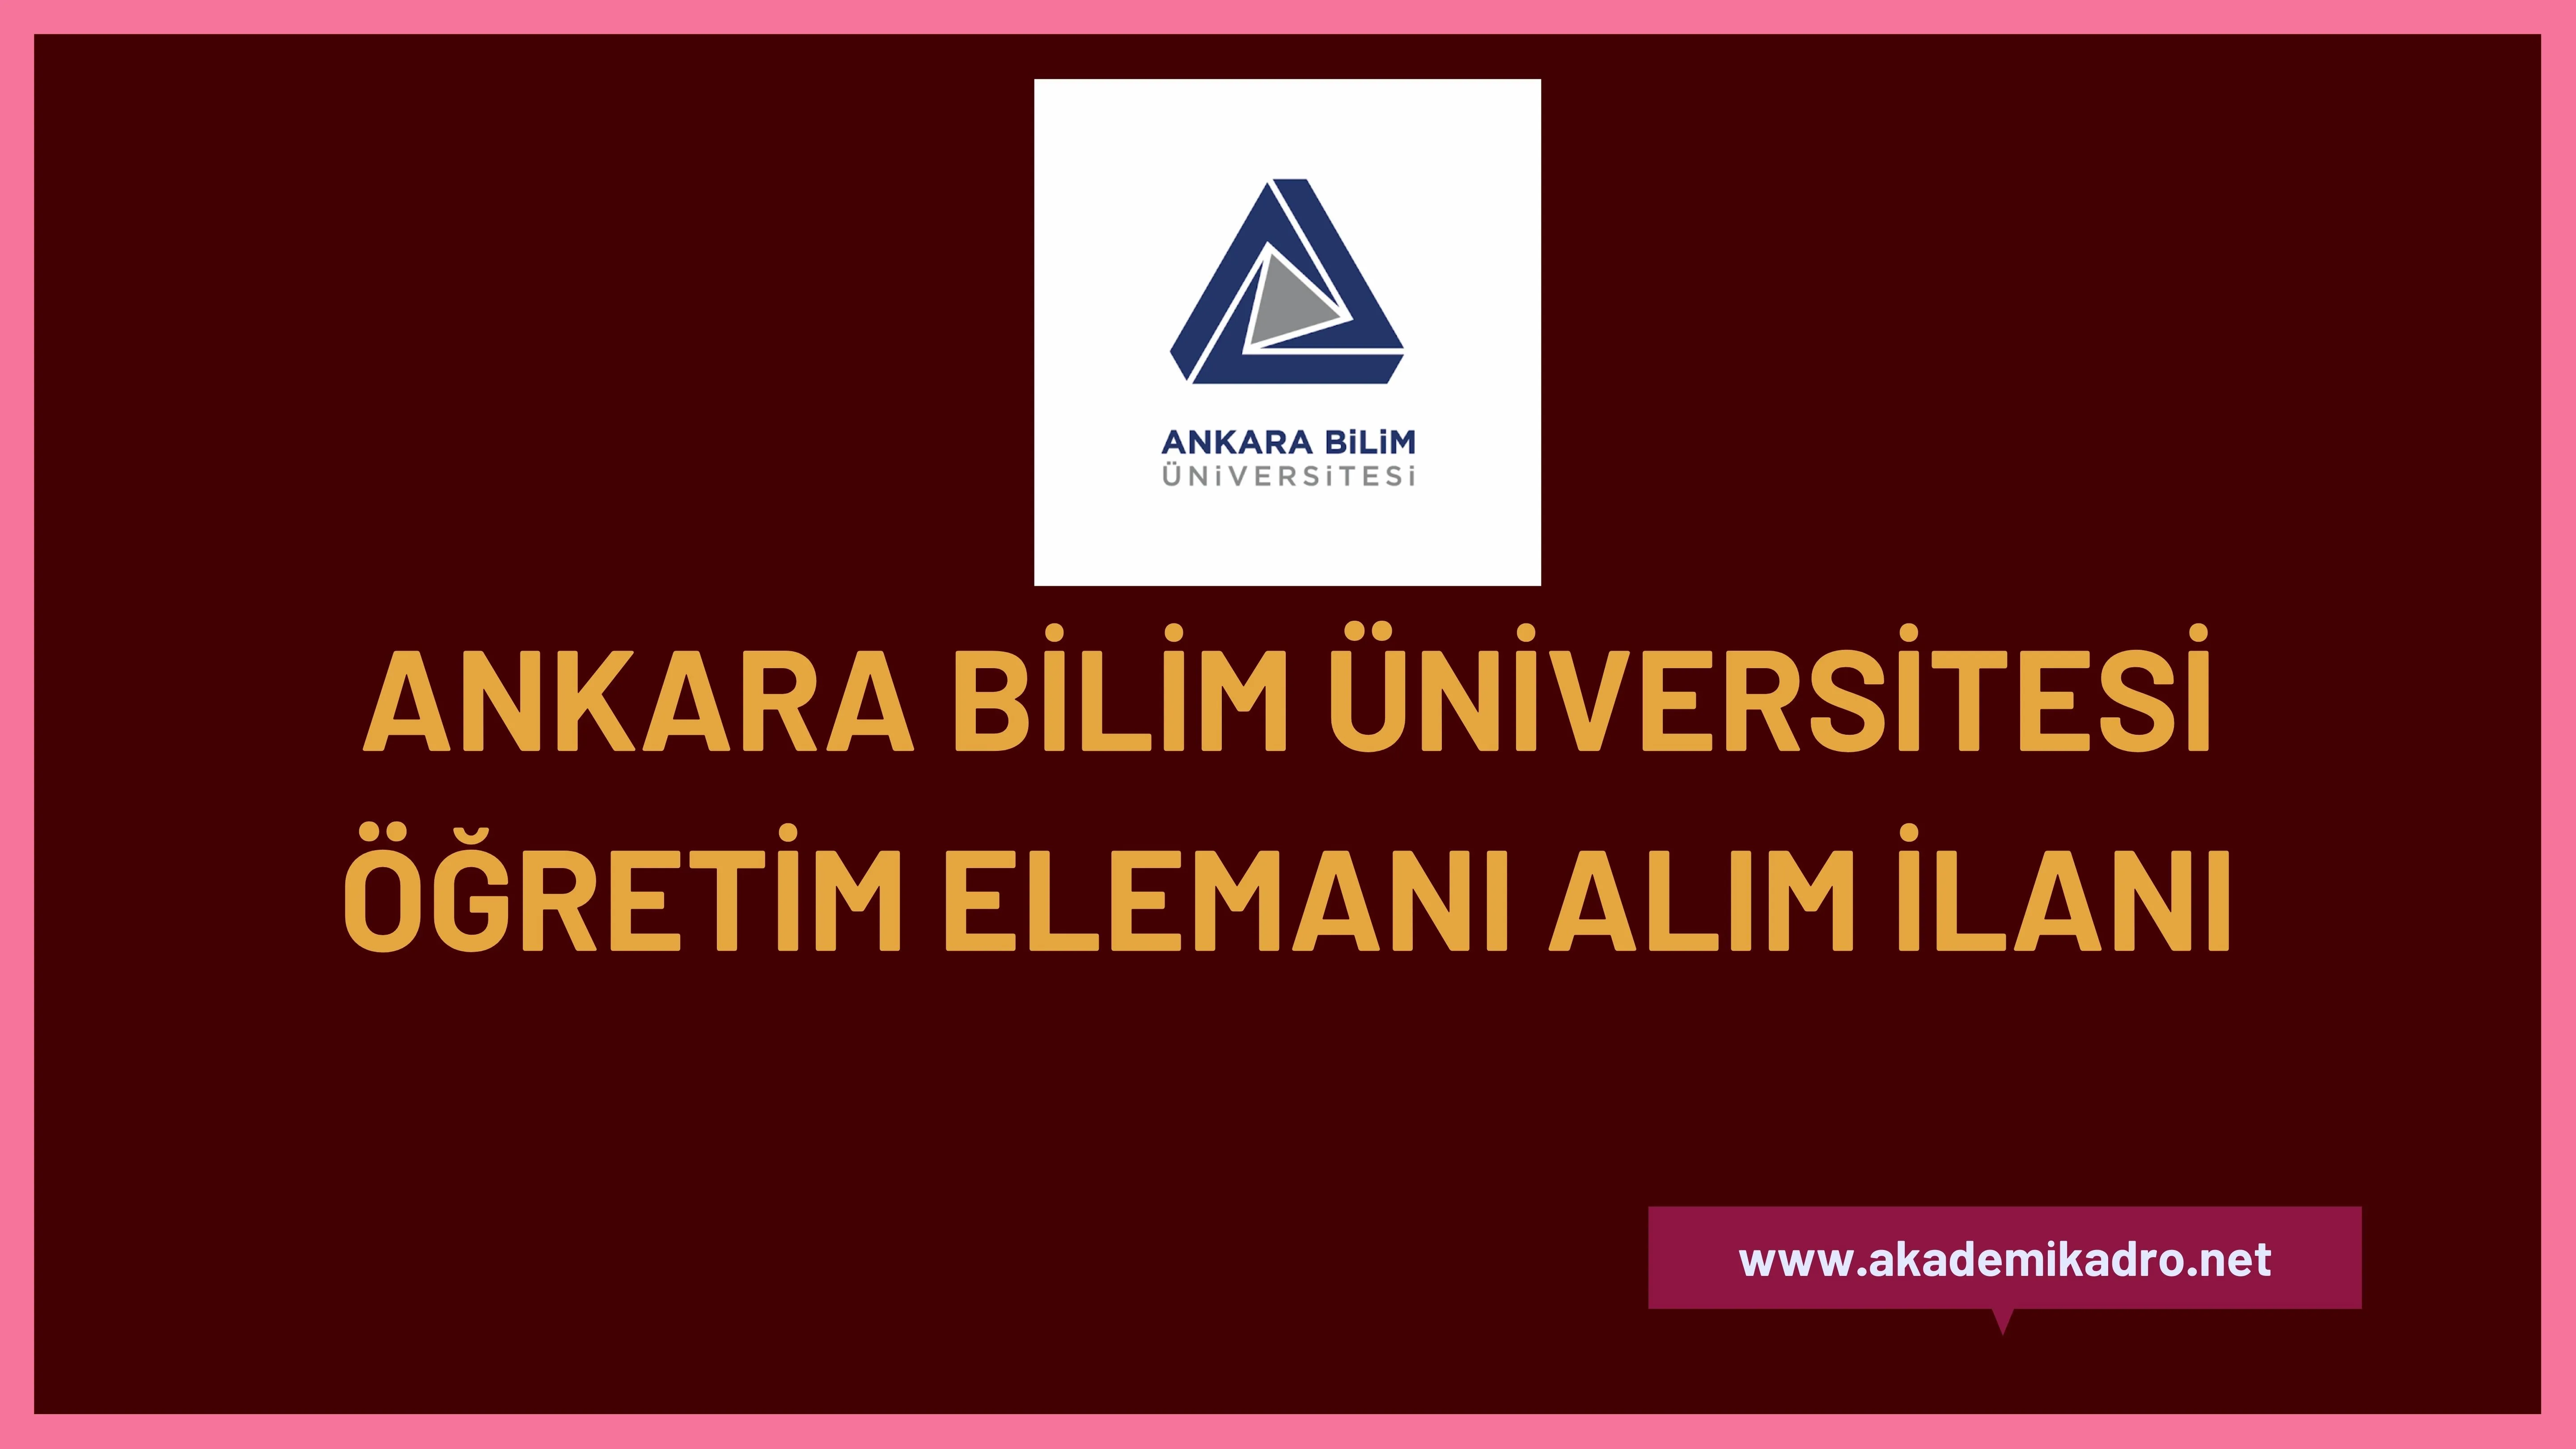 Ankara Bilim Üniversitesi 9 Öğretim görevlisi, 2 Araştırma görevlisi ve 10 öğretim üyesi olmak üzere 21 öğretim elemanı alacaktır.